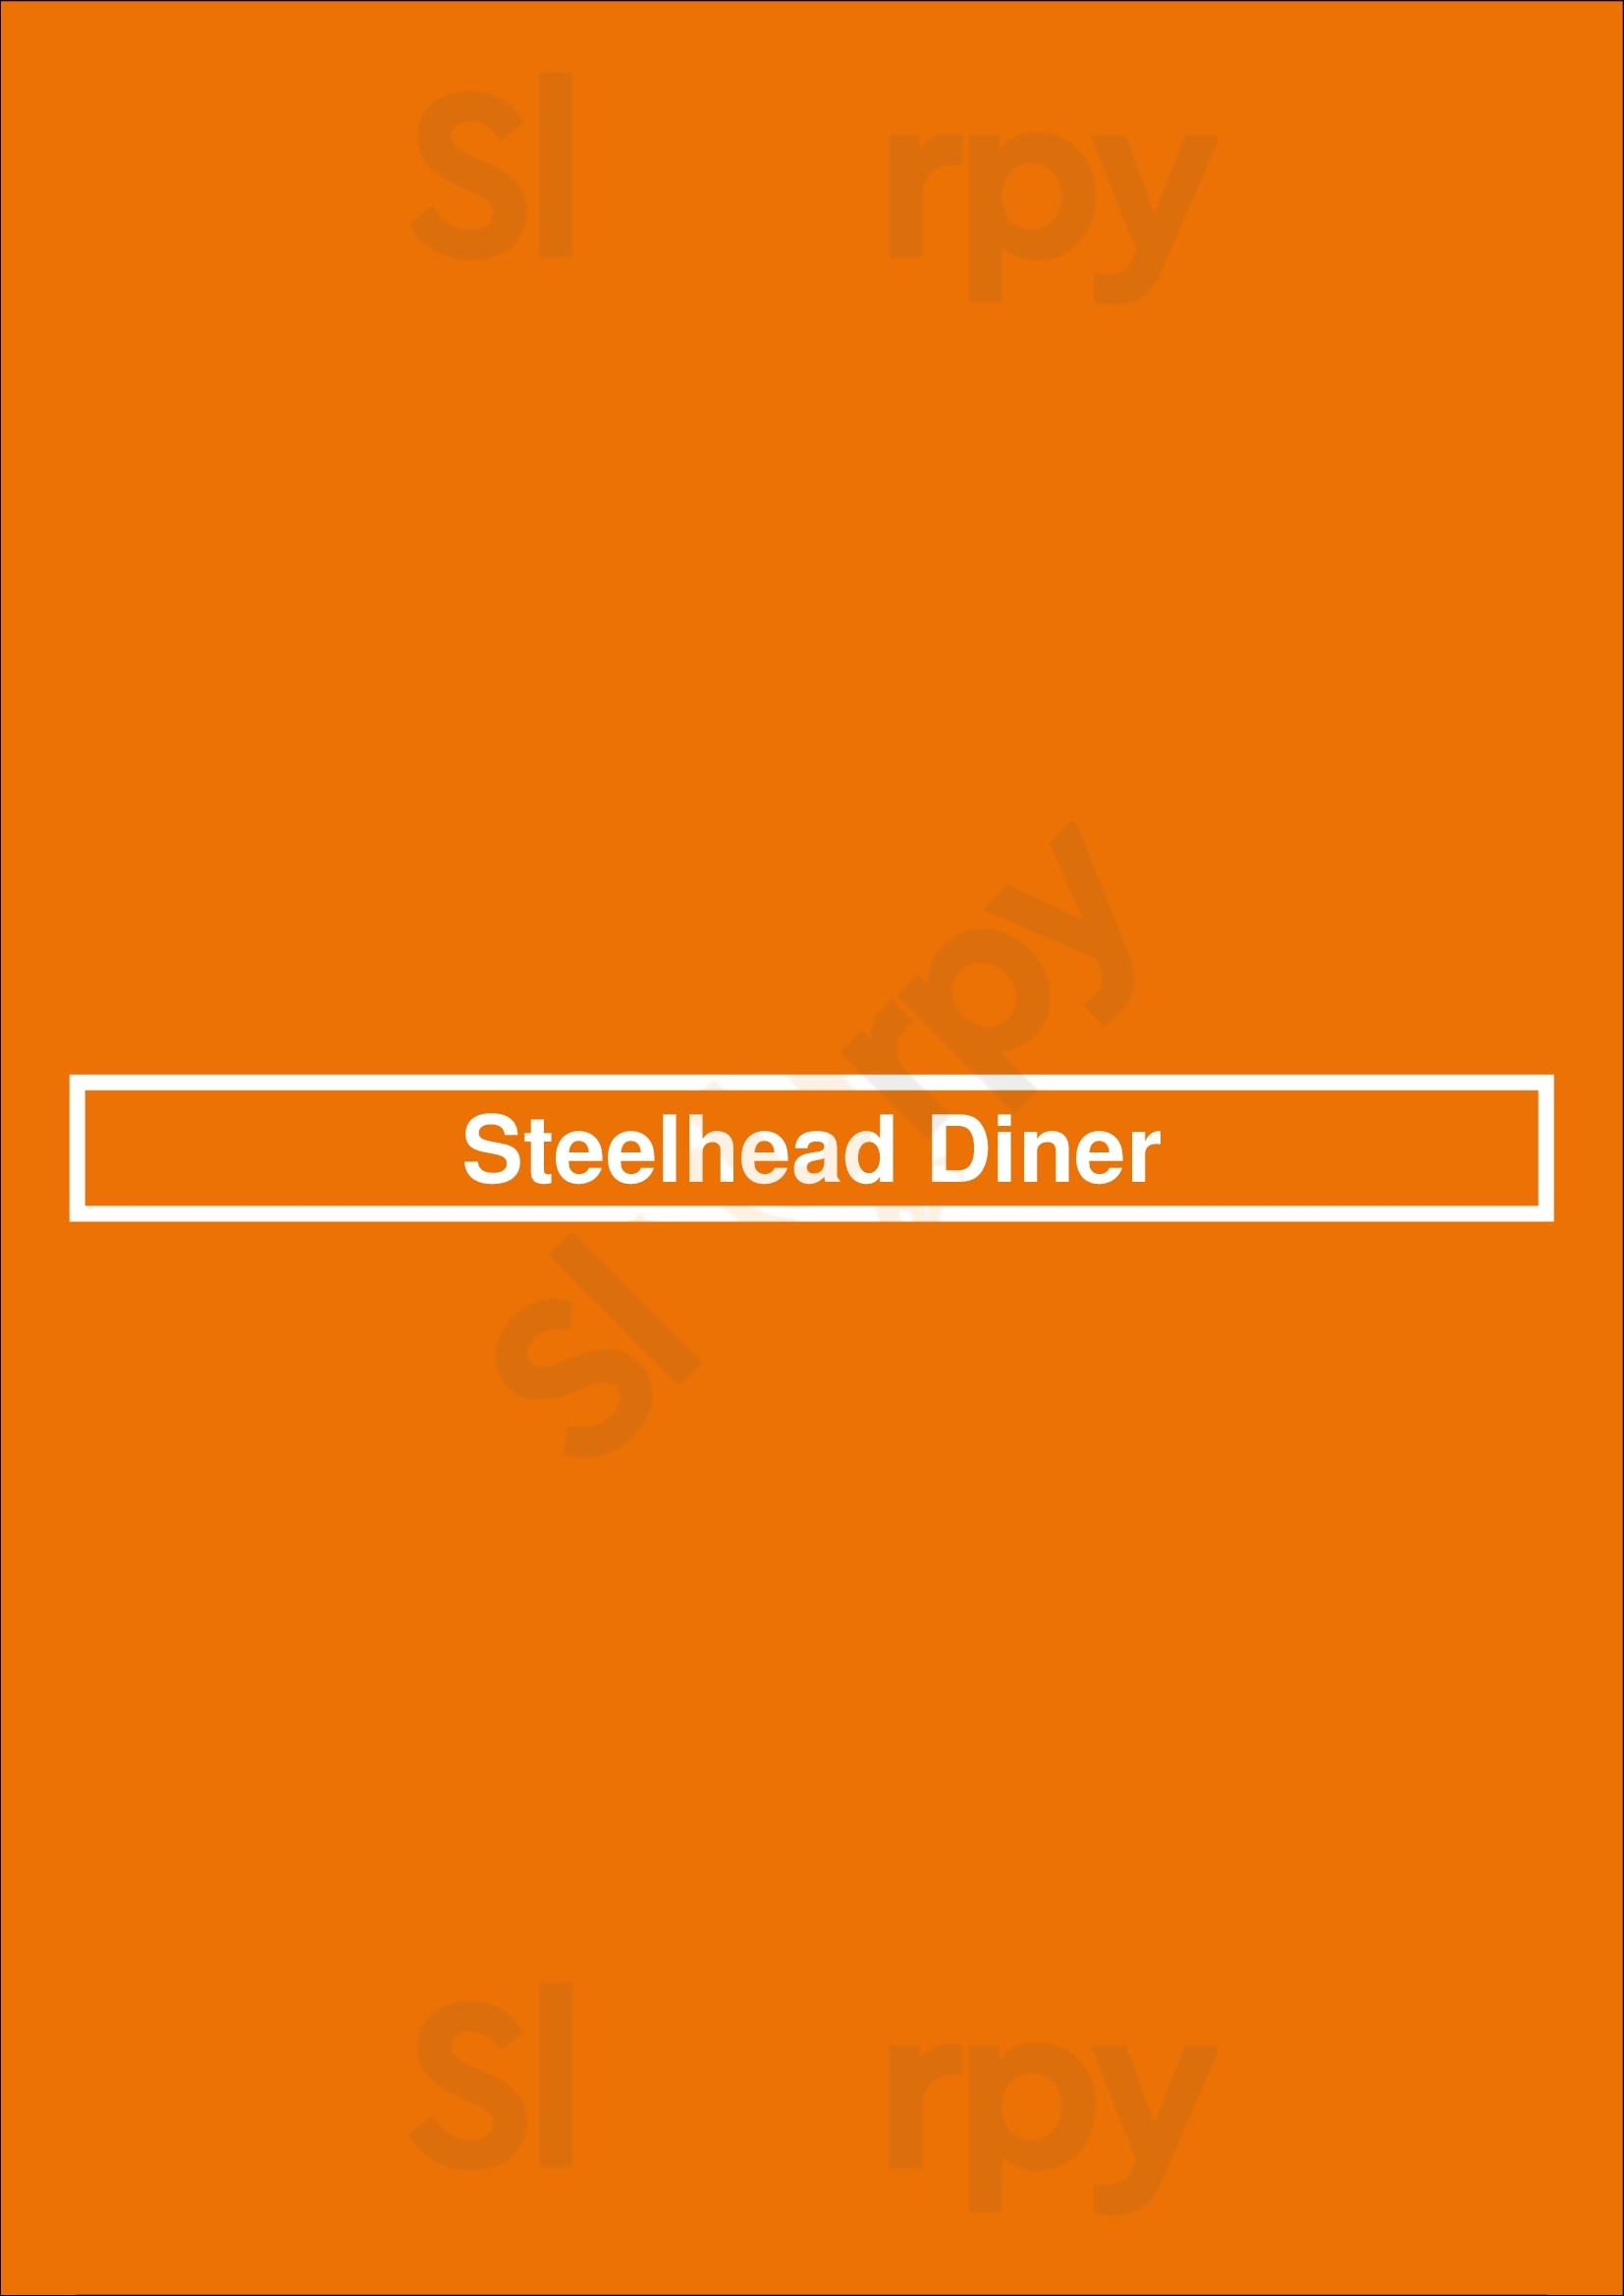 Steelhead Diner Seattle Menu - 1